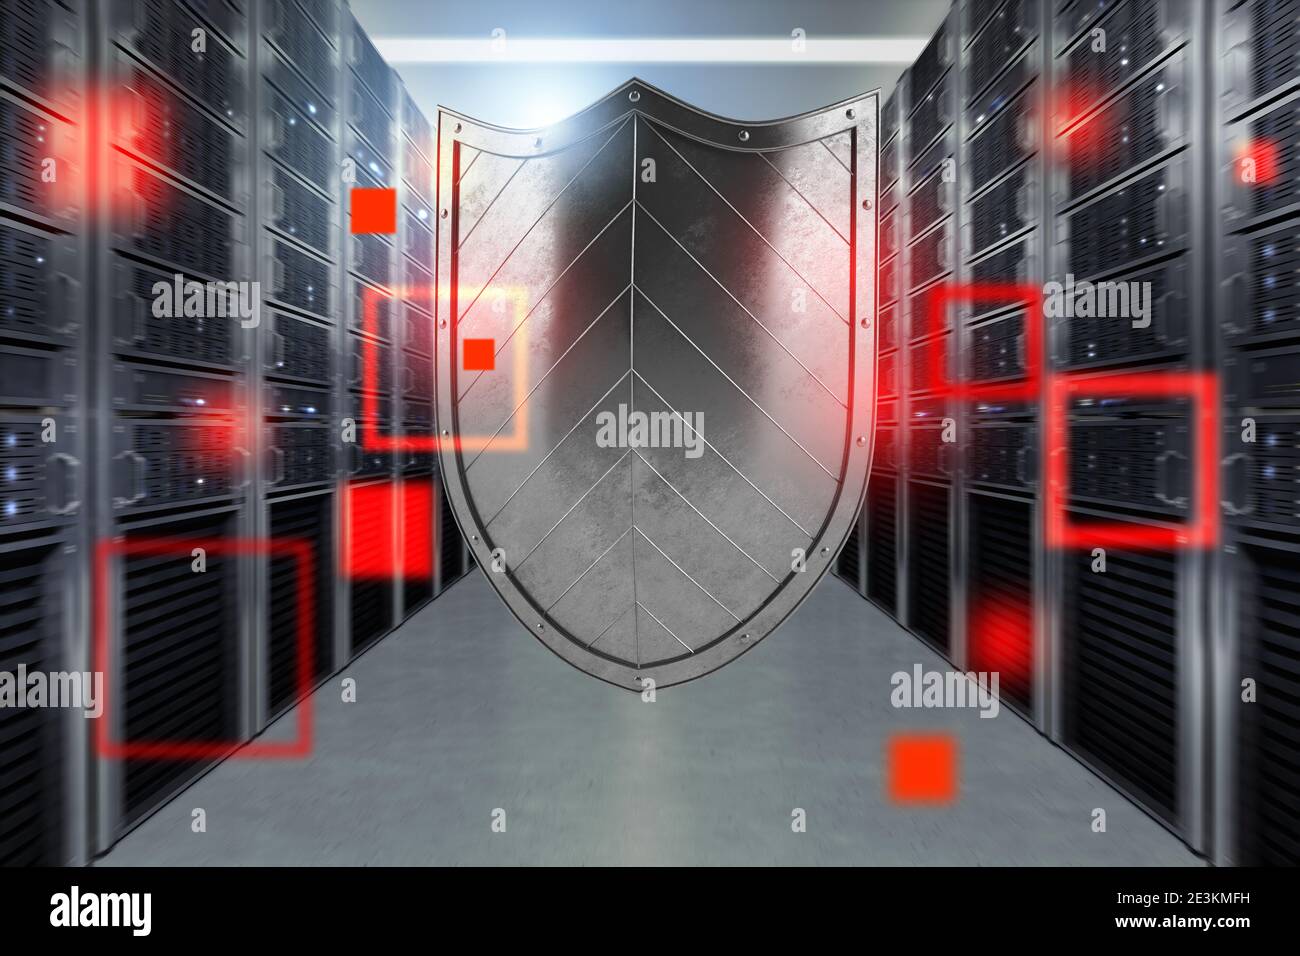 Concept de sécurité dans un centre de données avec le serveur de base de données Banque D'Images